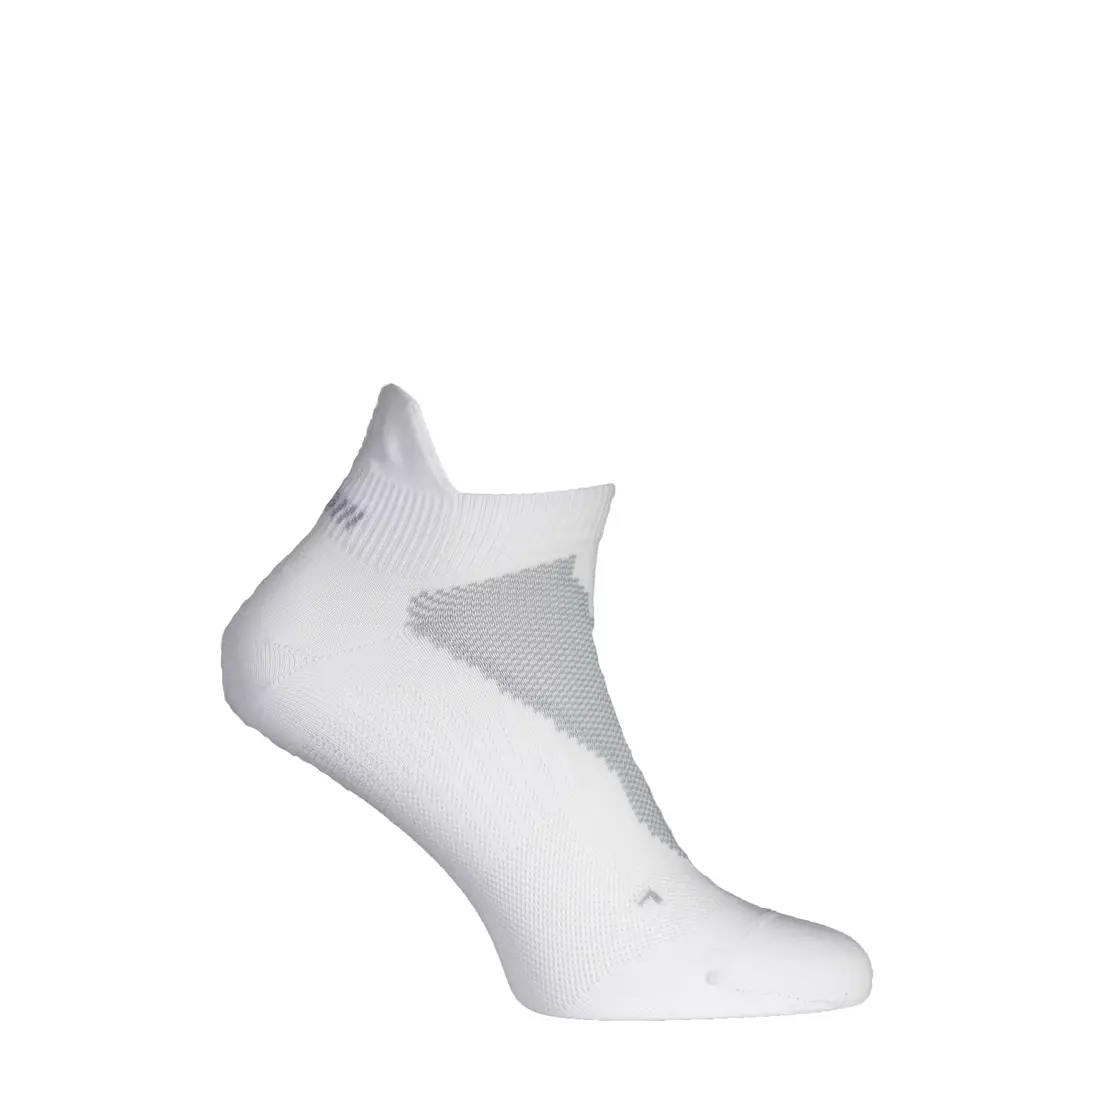 ROGELLI RUN RRS-06 890.711 - running socks, 2-pack, white